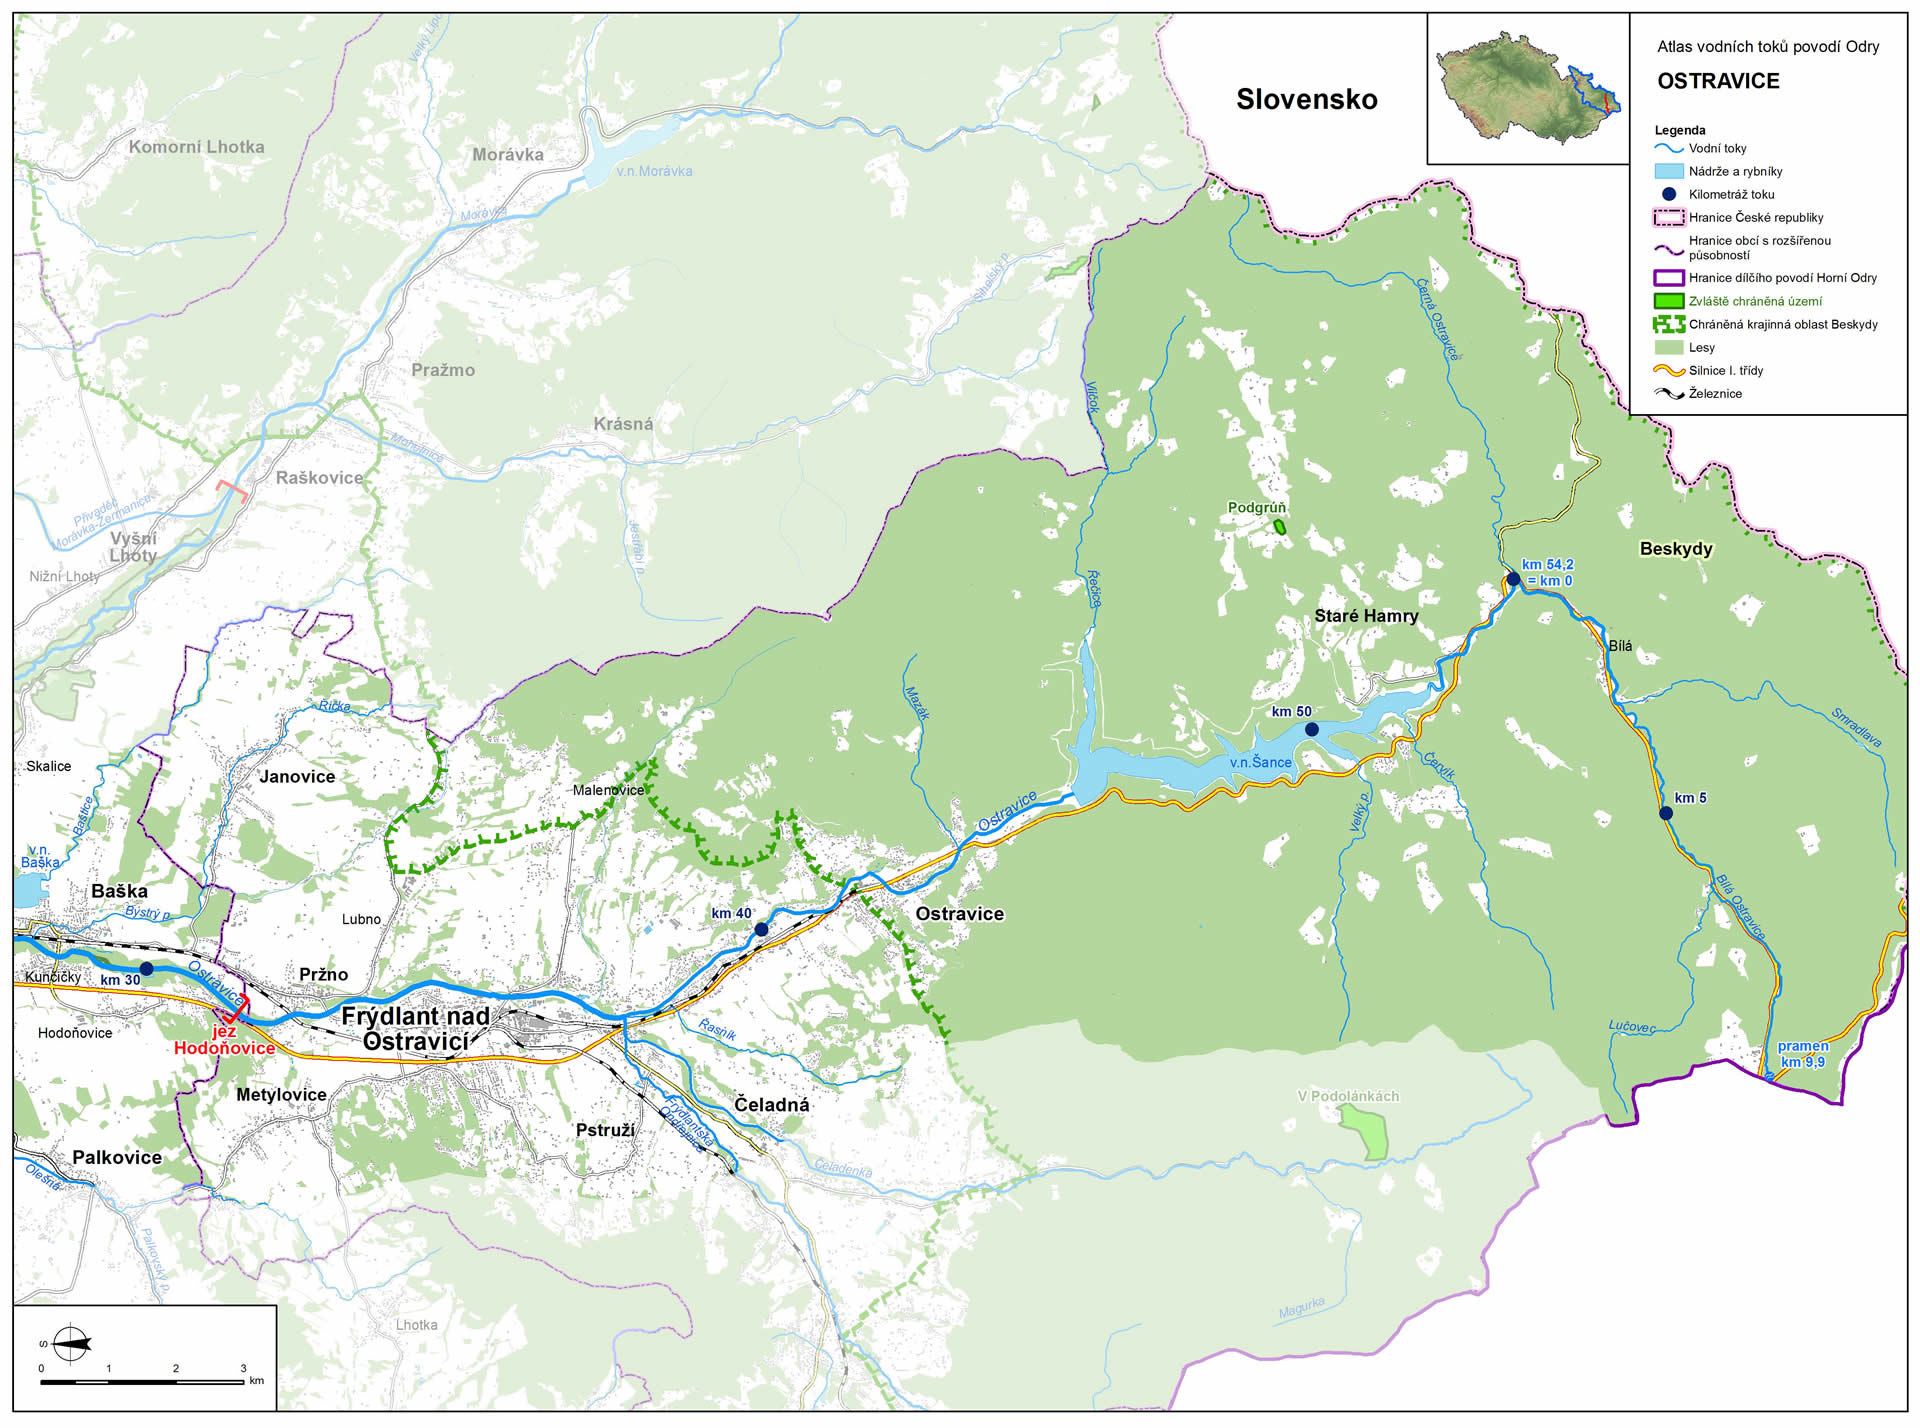 Mapa: horní tok Ostravice (zdroj: Atlas hlavních vodních toků povodí Odry, https://www.pod.cz/atlas_toku/ostravice.html).